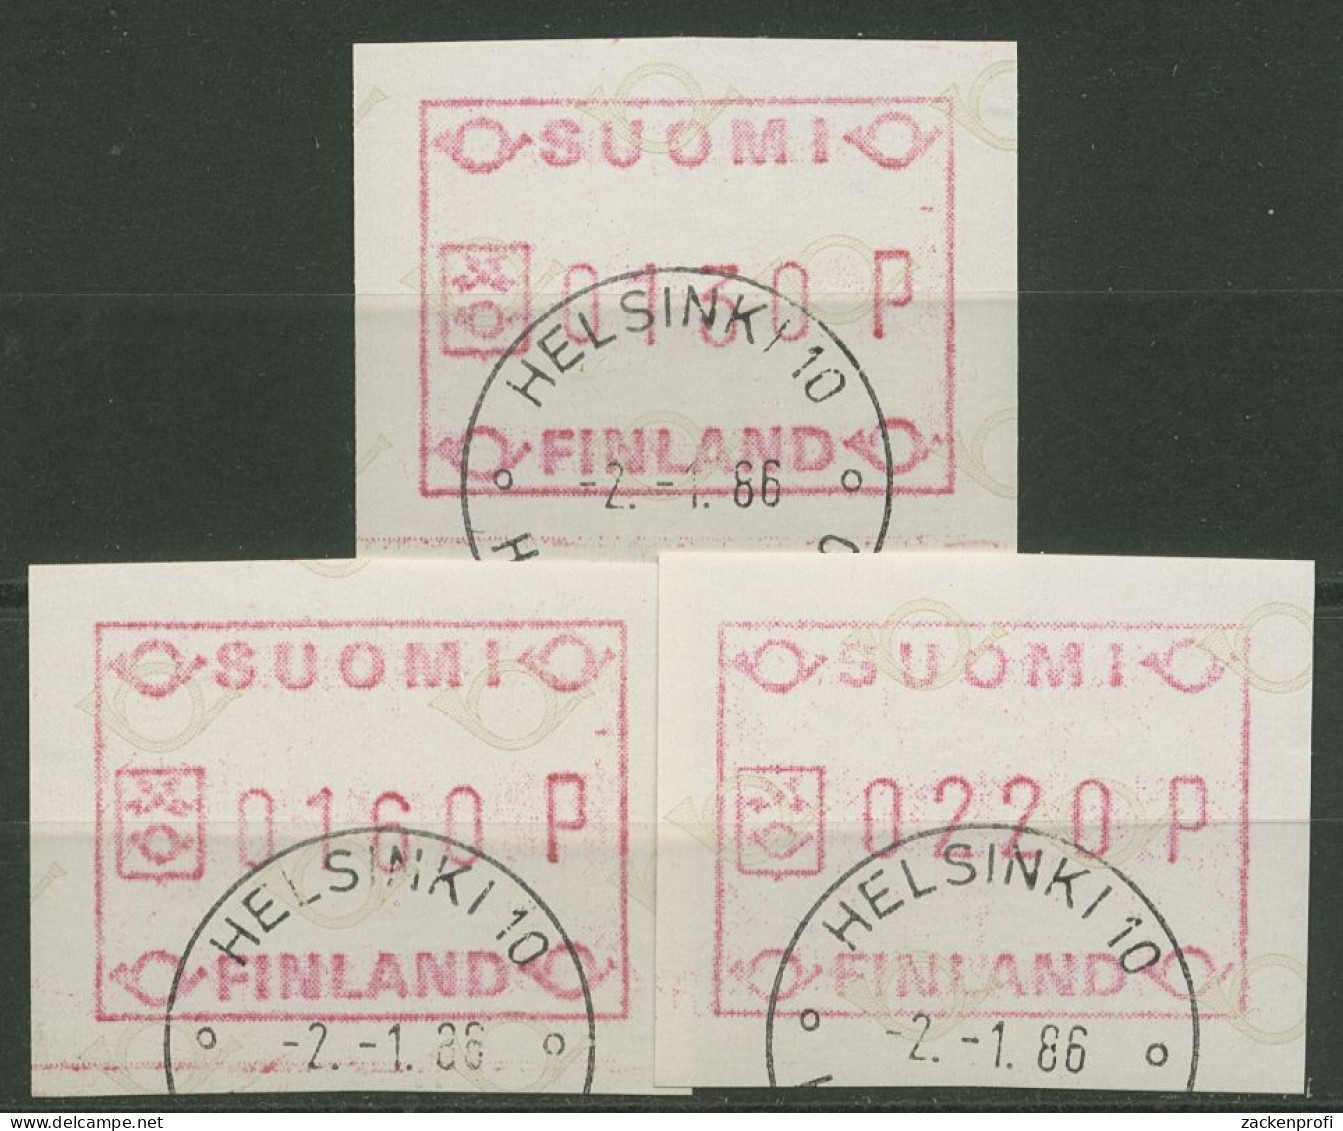 Finnland Automatenmarken 1986 Kleine Posthörner Satz ATM 1.1 S 6 Gestempelt - Machine Labels [ATM]